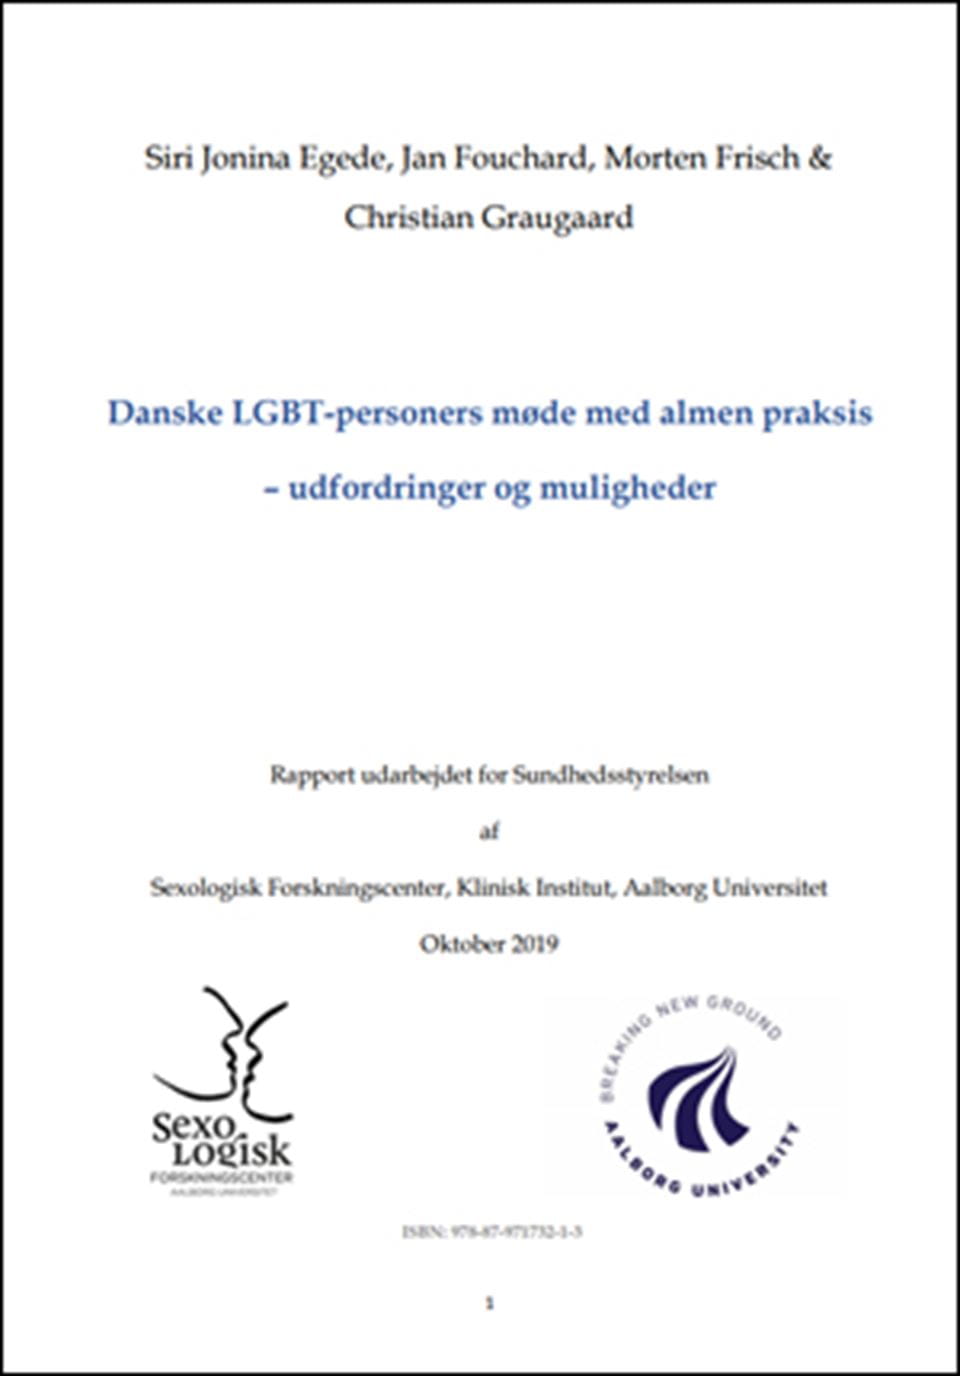 Danske LGBT-personers møde med almen praksis udfordringer og muligheder